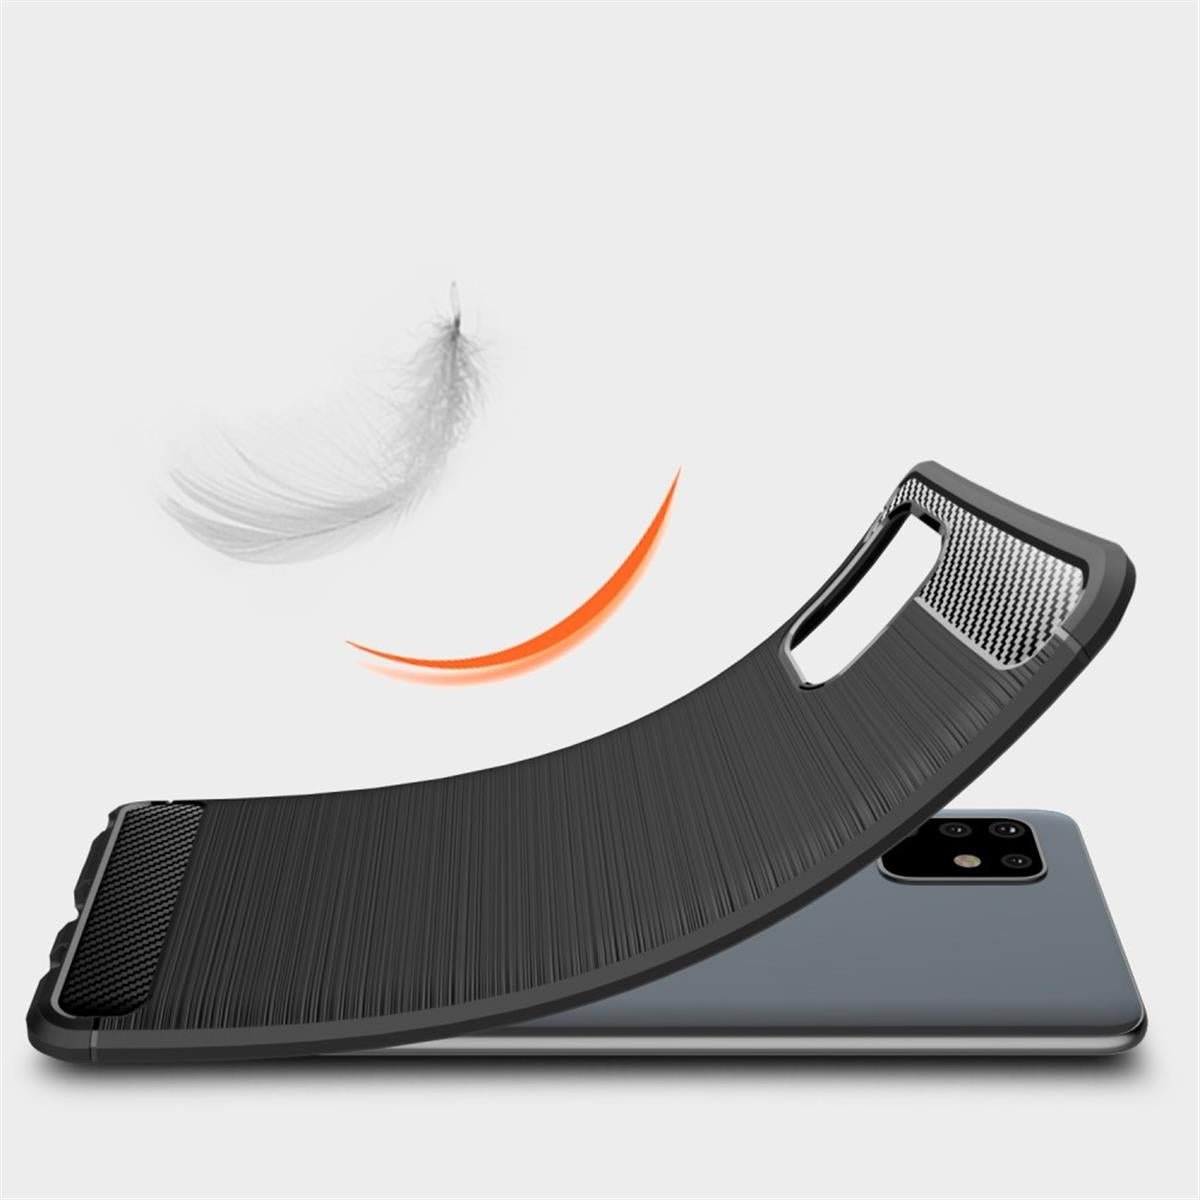 Hülle für Samsung Galaxy Note10 Lite Handyhülle Silikon Case Carbonfarben